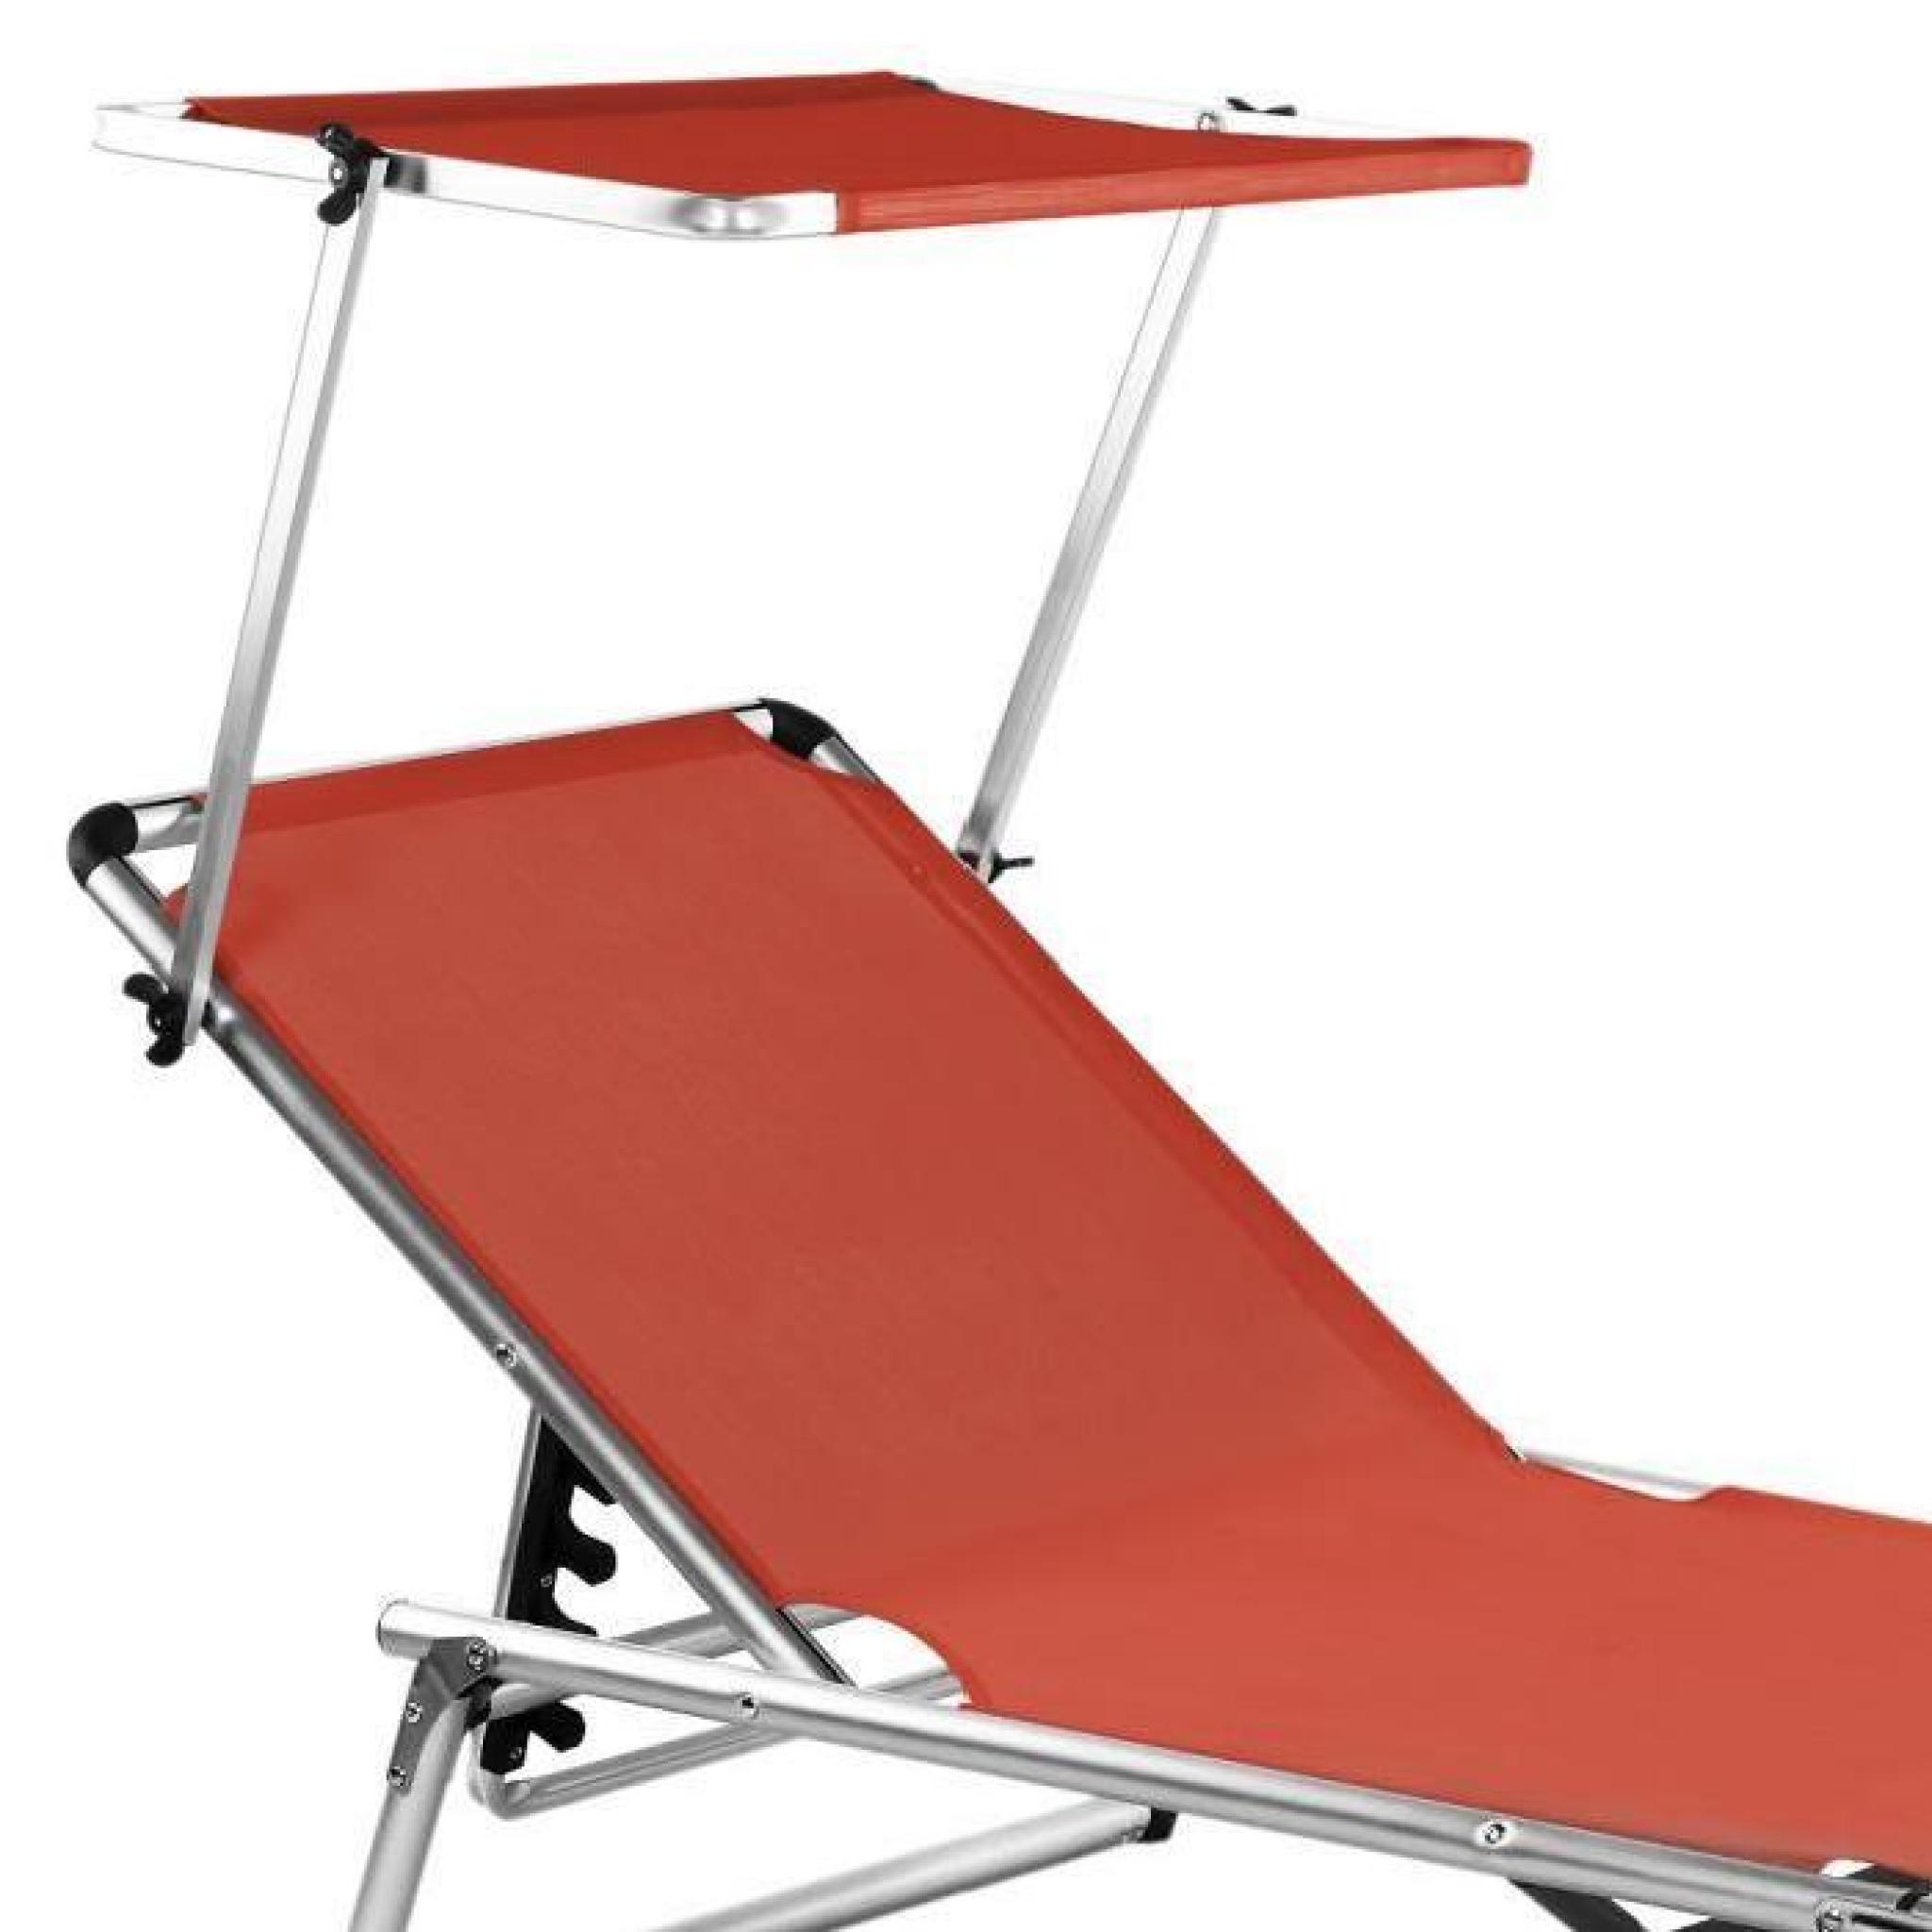 Chaise longue de jardin rouge pliante aluminium pas cher